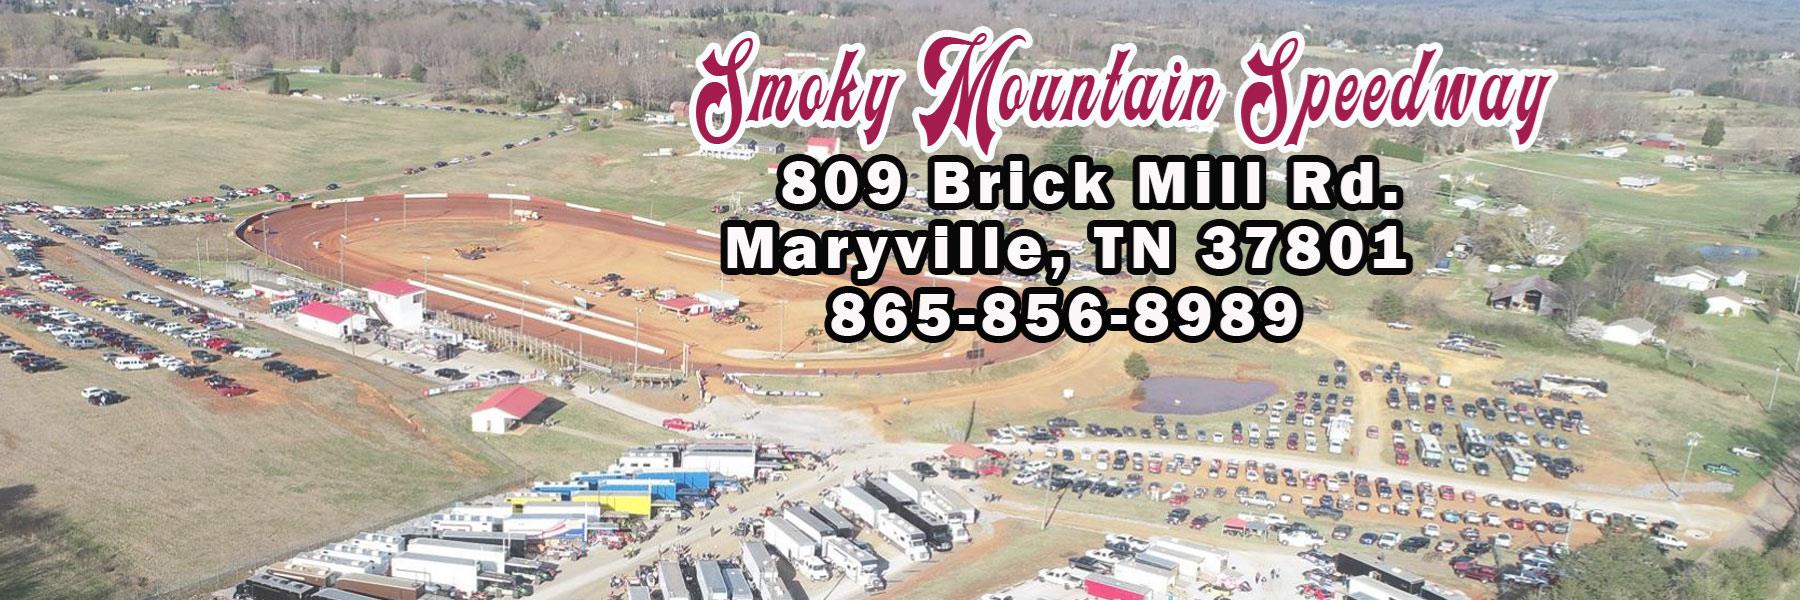 6/19/2021 - Smoky Mountain Speedway